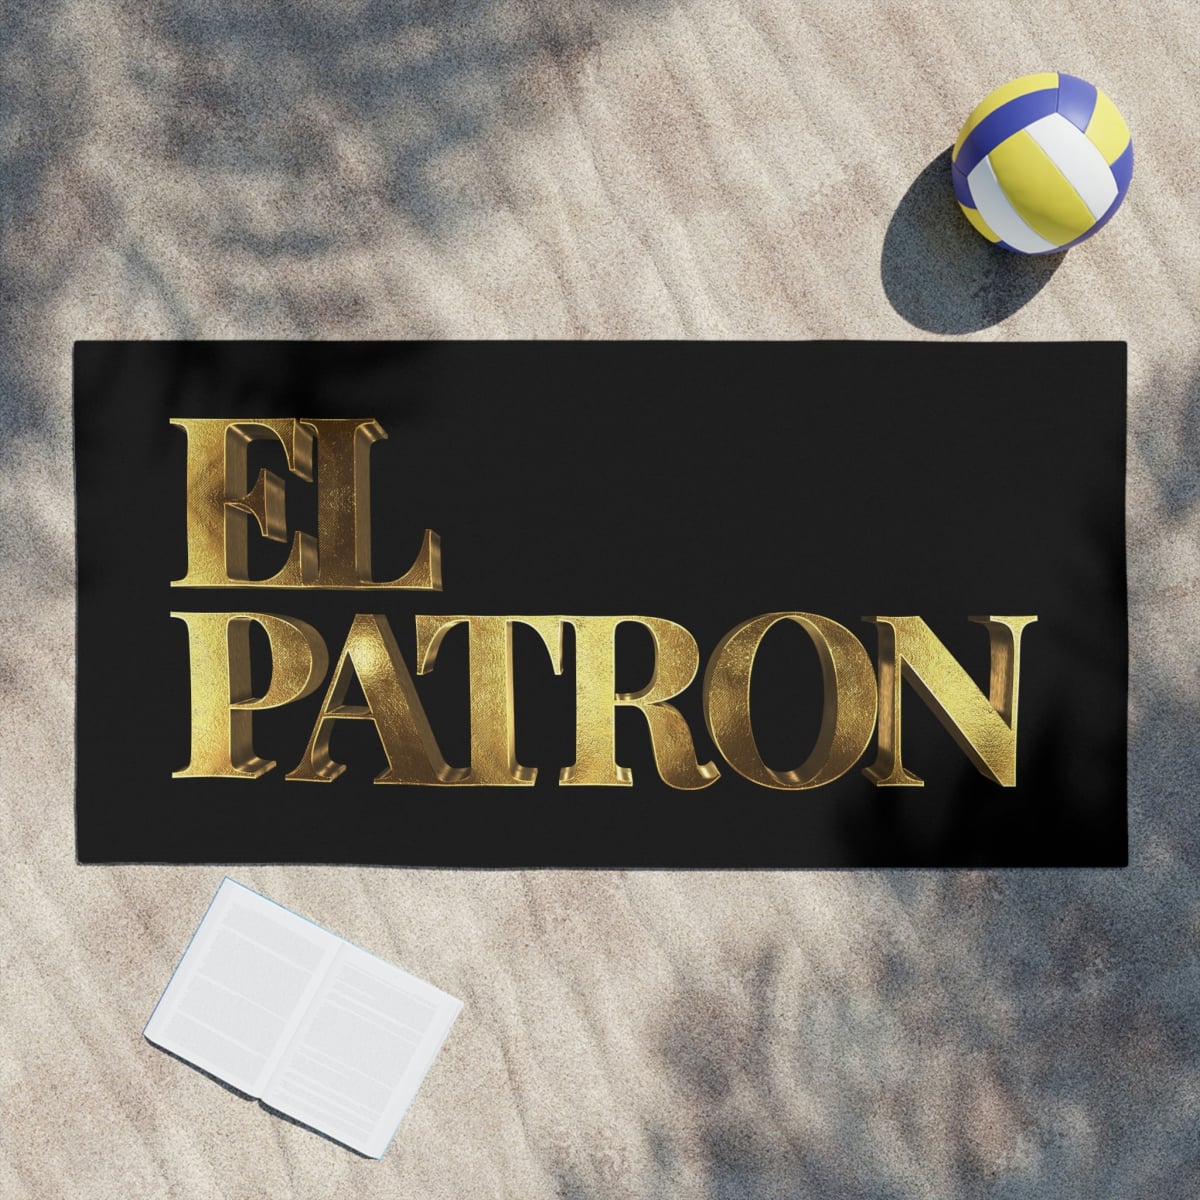 El Patron Pablo Escobar Gold Beach Towels